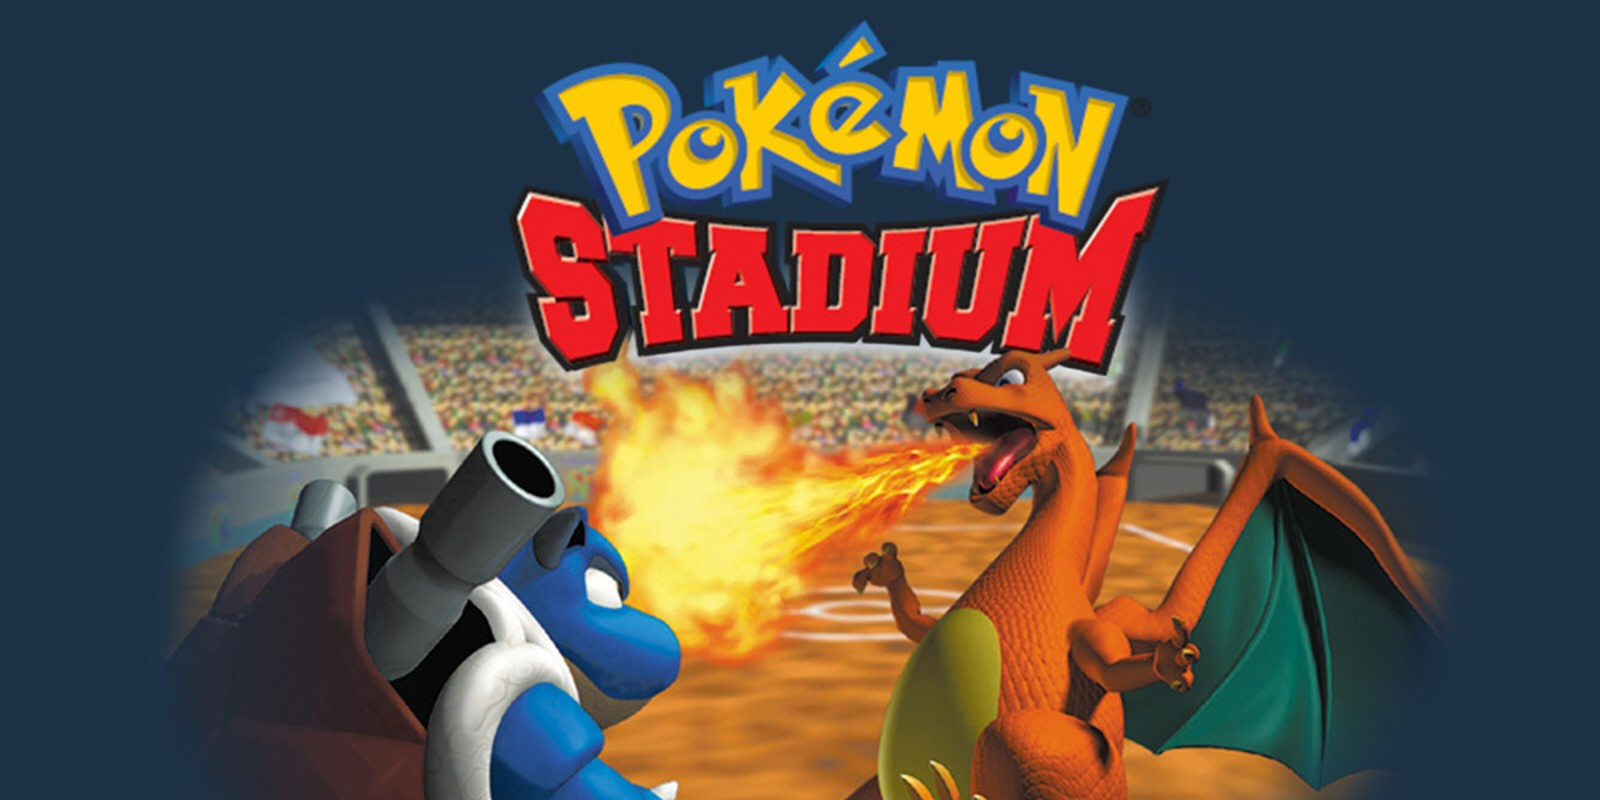 The Pokemon Stadium logo above Blastoise and Charizard.